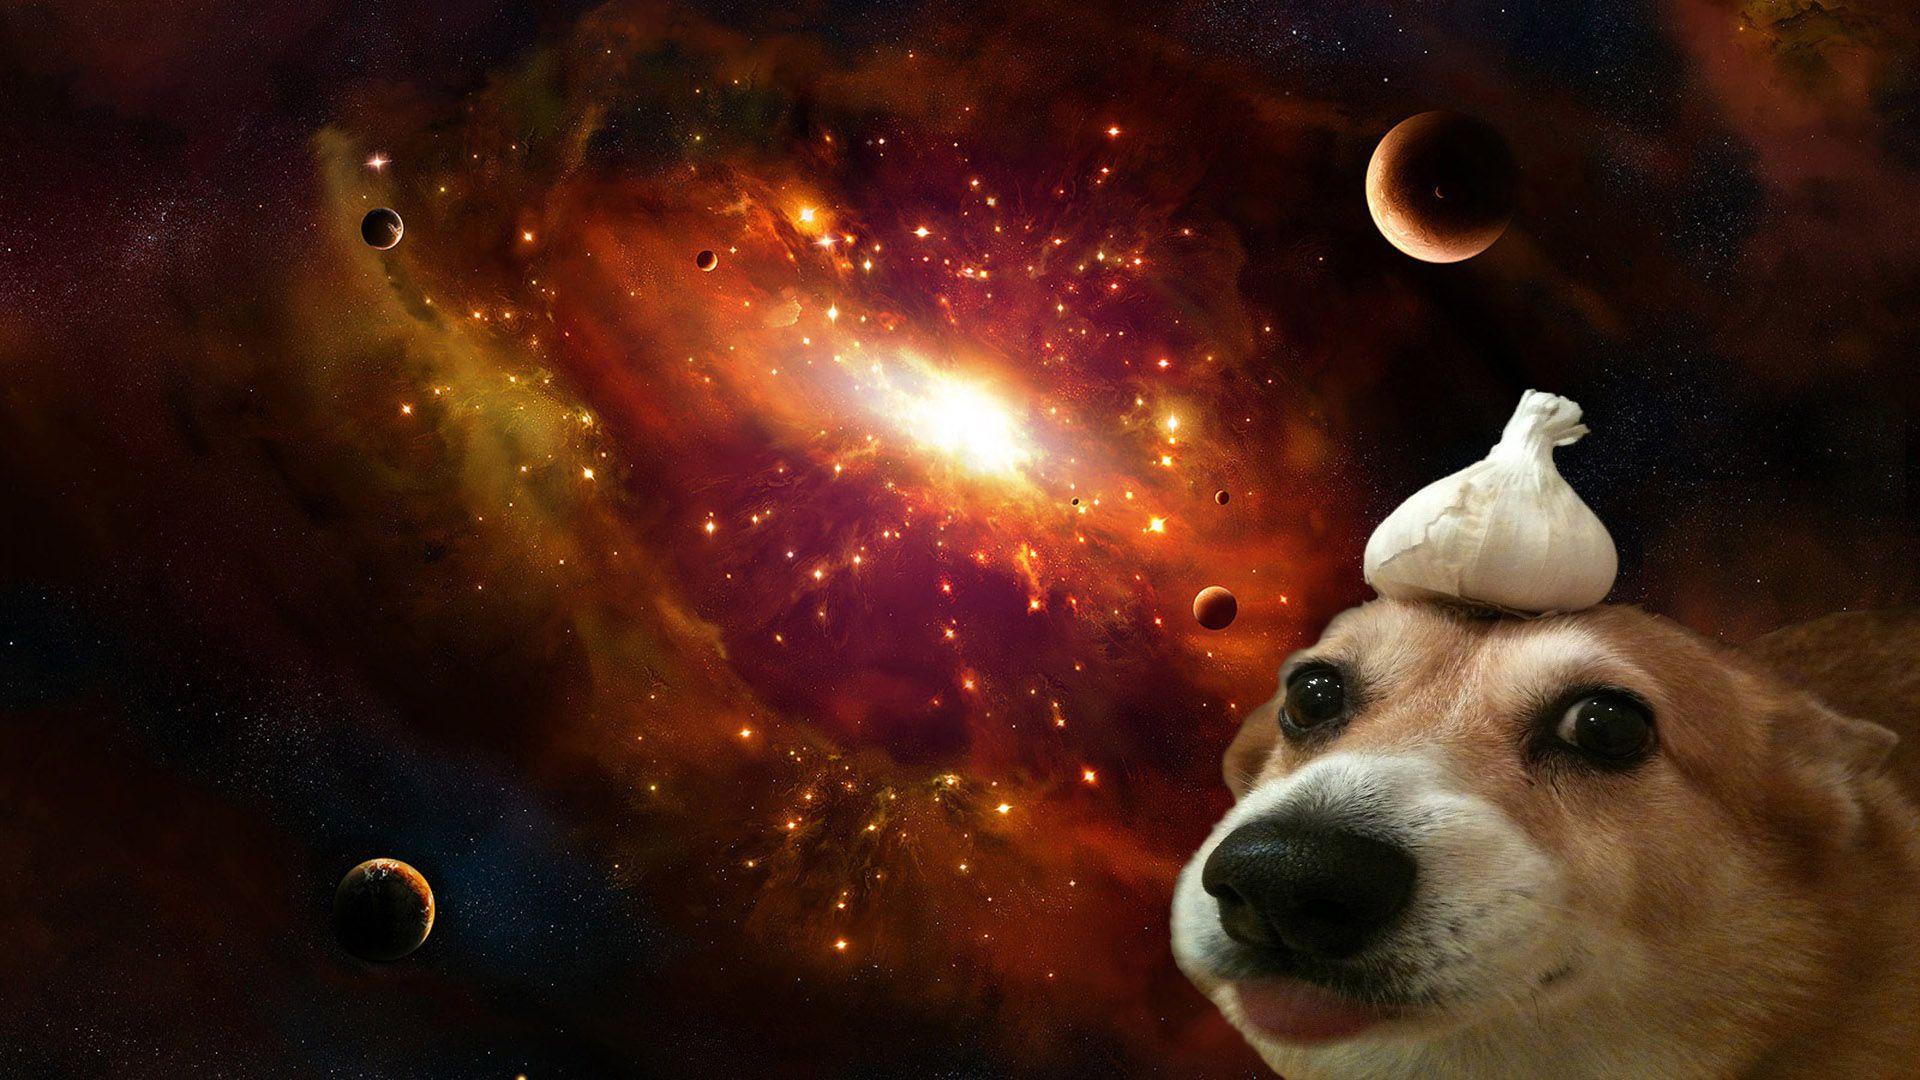 Hình nền thiên hà chó sẽ mang đến cho bạn những góc nhìn mới mẻ, độc đáo và sáng tạo về loài thú cưng này. Hãy cùng chiêm ngưỡng những bức tranh tinh túy đầy màu sắc và khởi động cho một ngày tuyệt vời hơn.